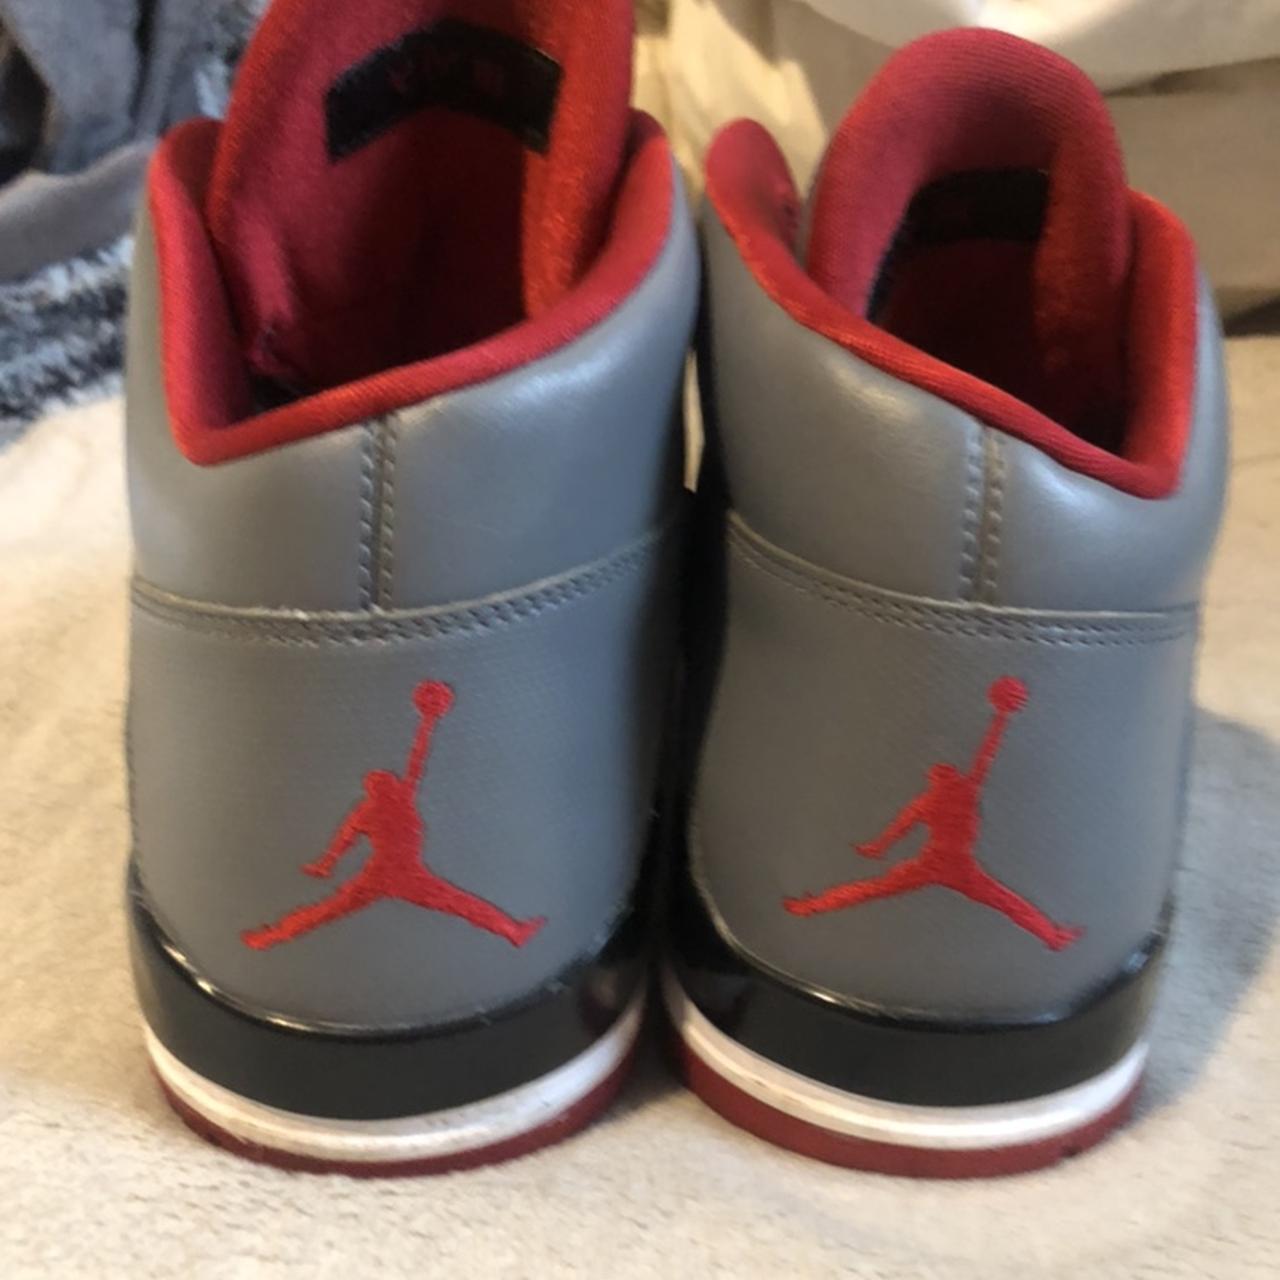 Jordans V IV III grey colour with reflective print. - Depop